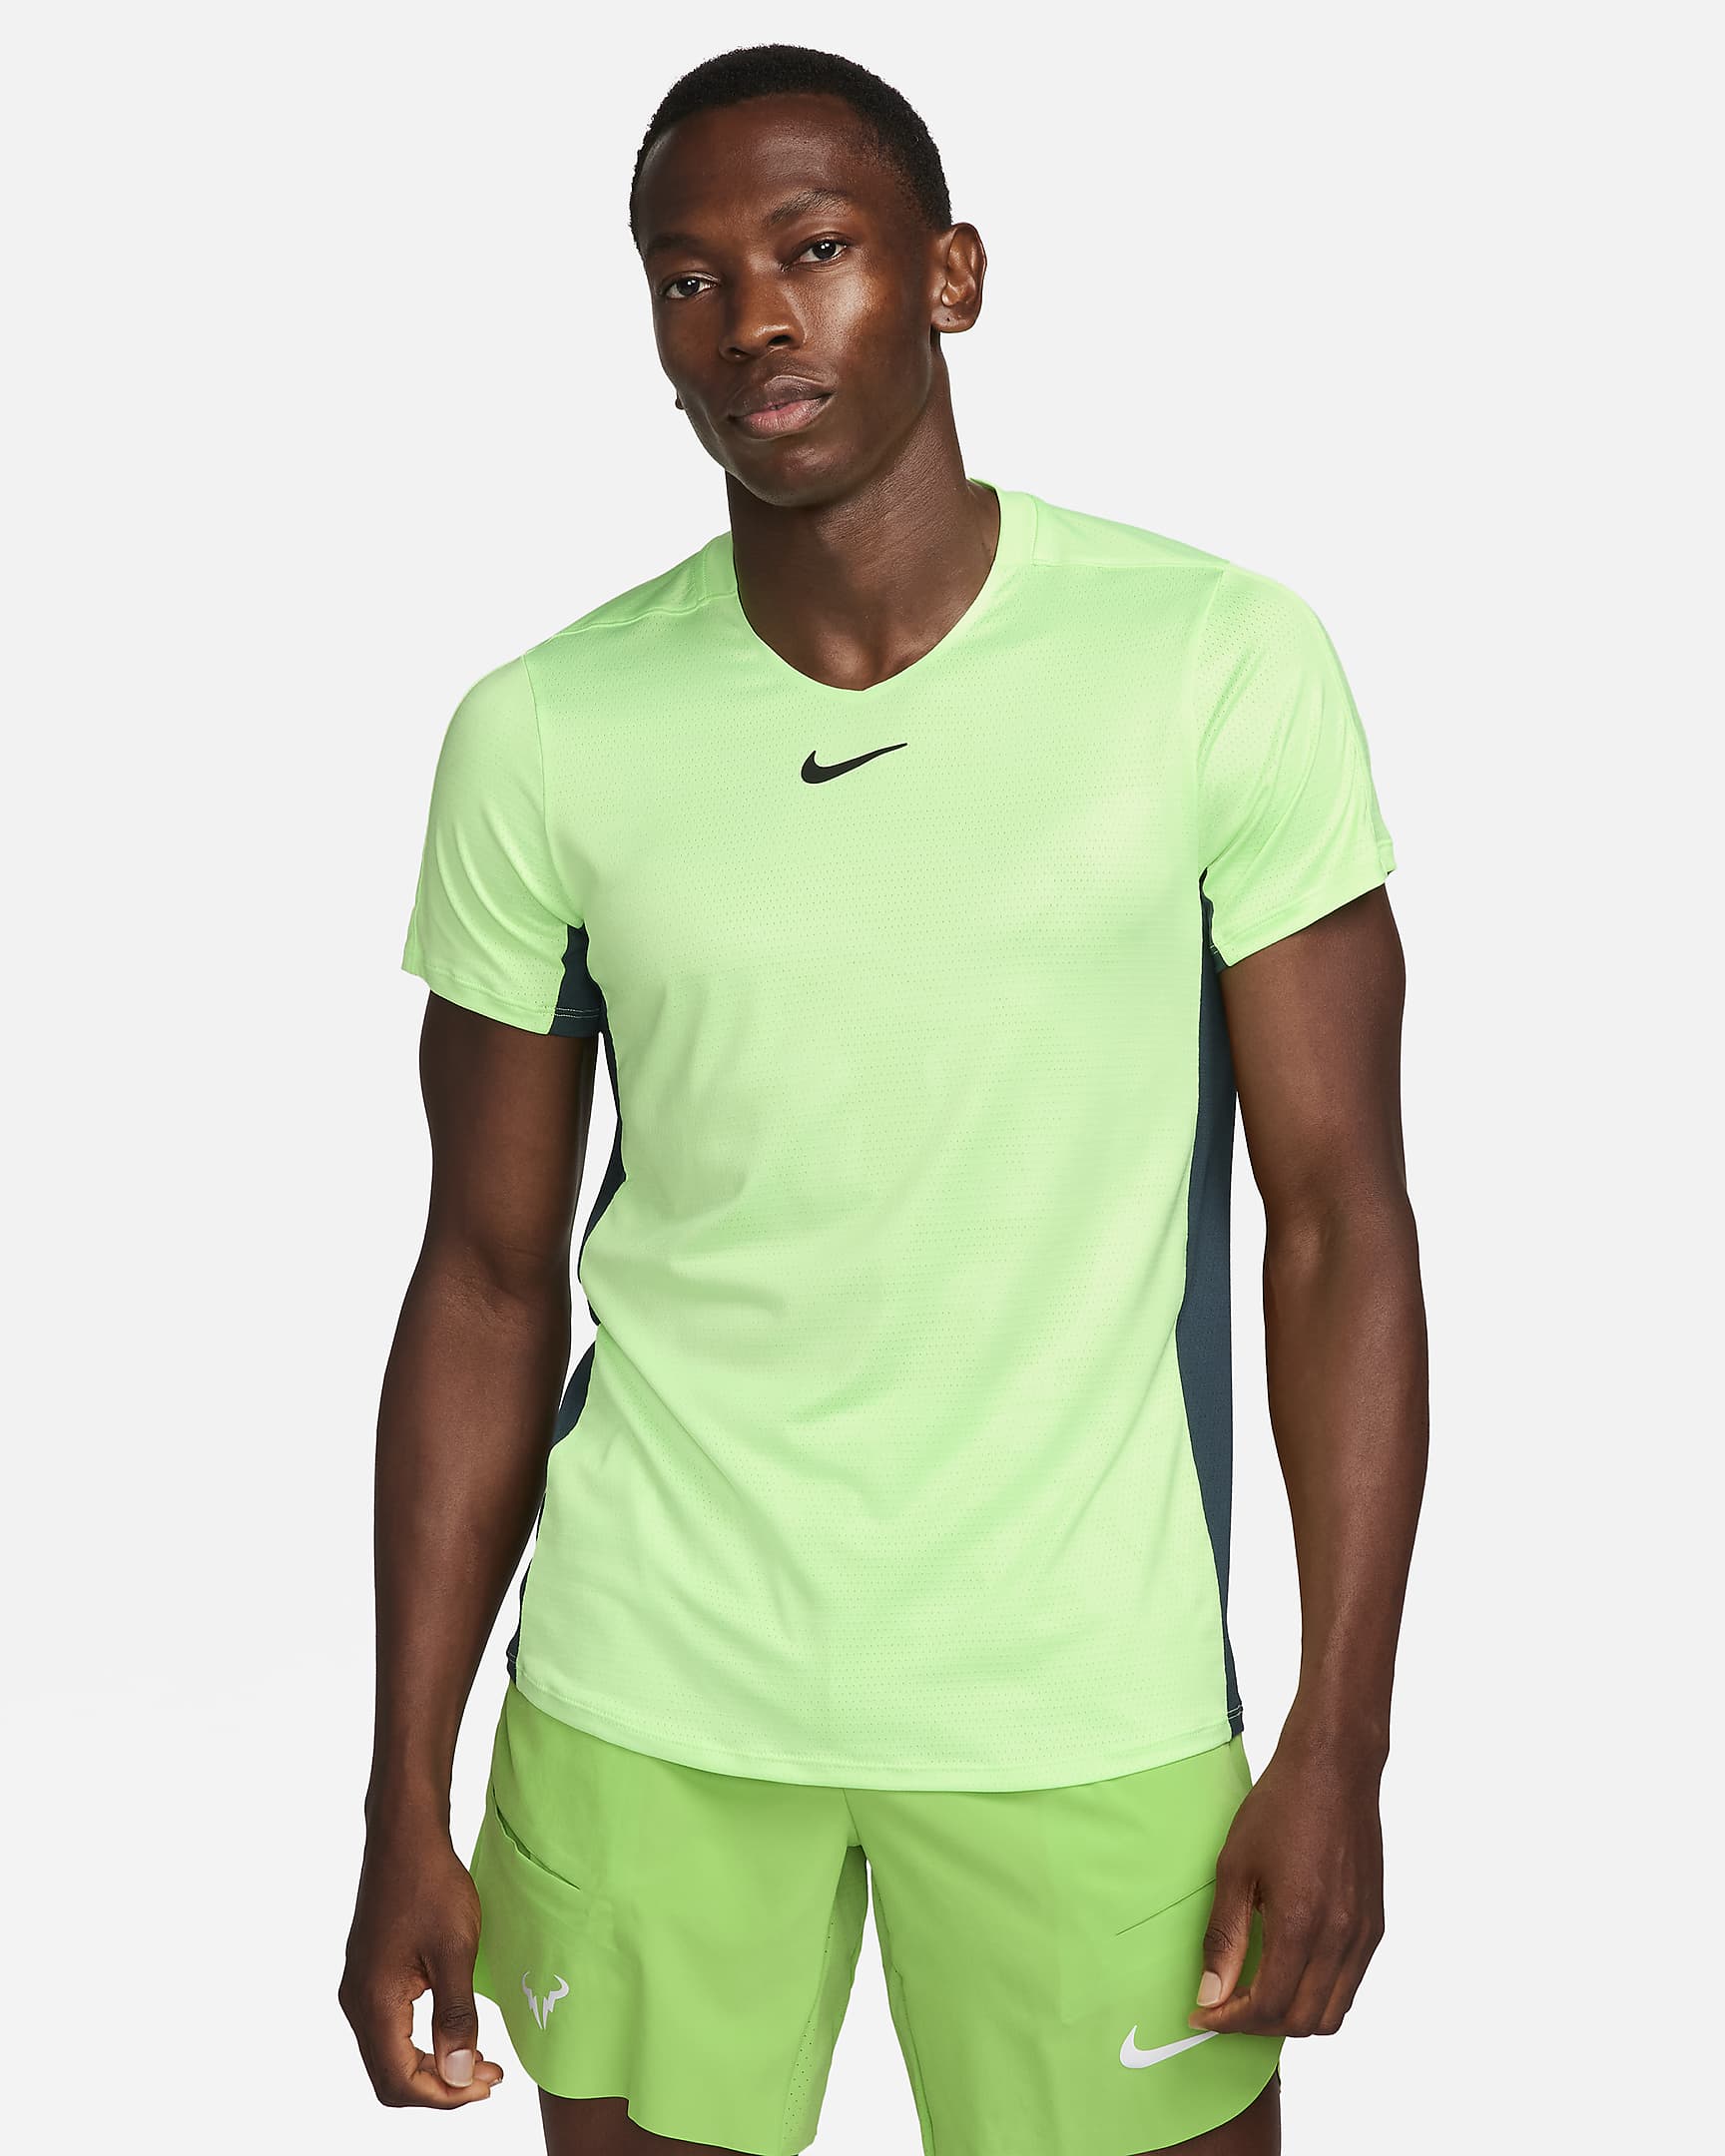 NikeCourt Dri-FIT Advantage Men's Tennis Top. Nike CH